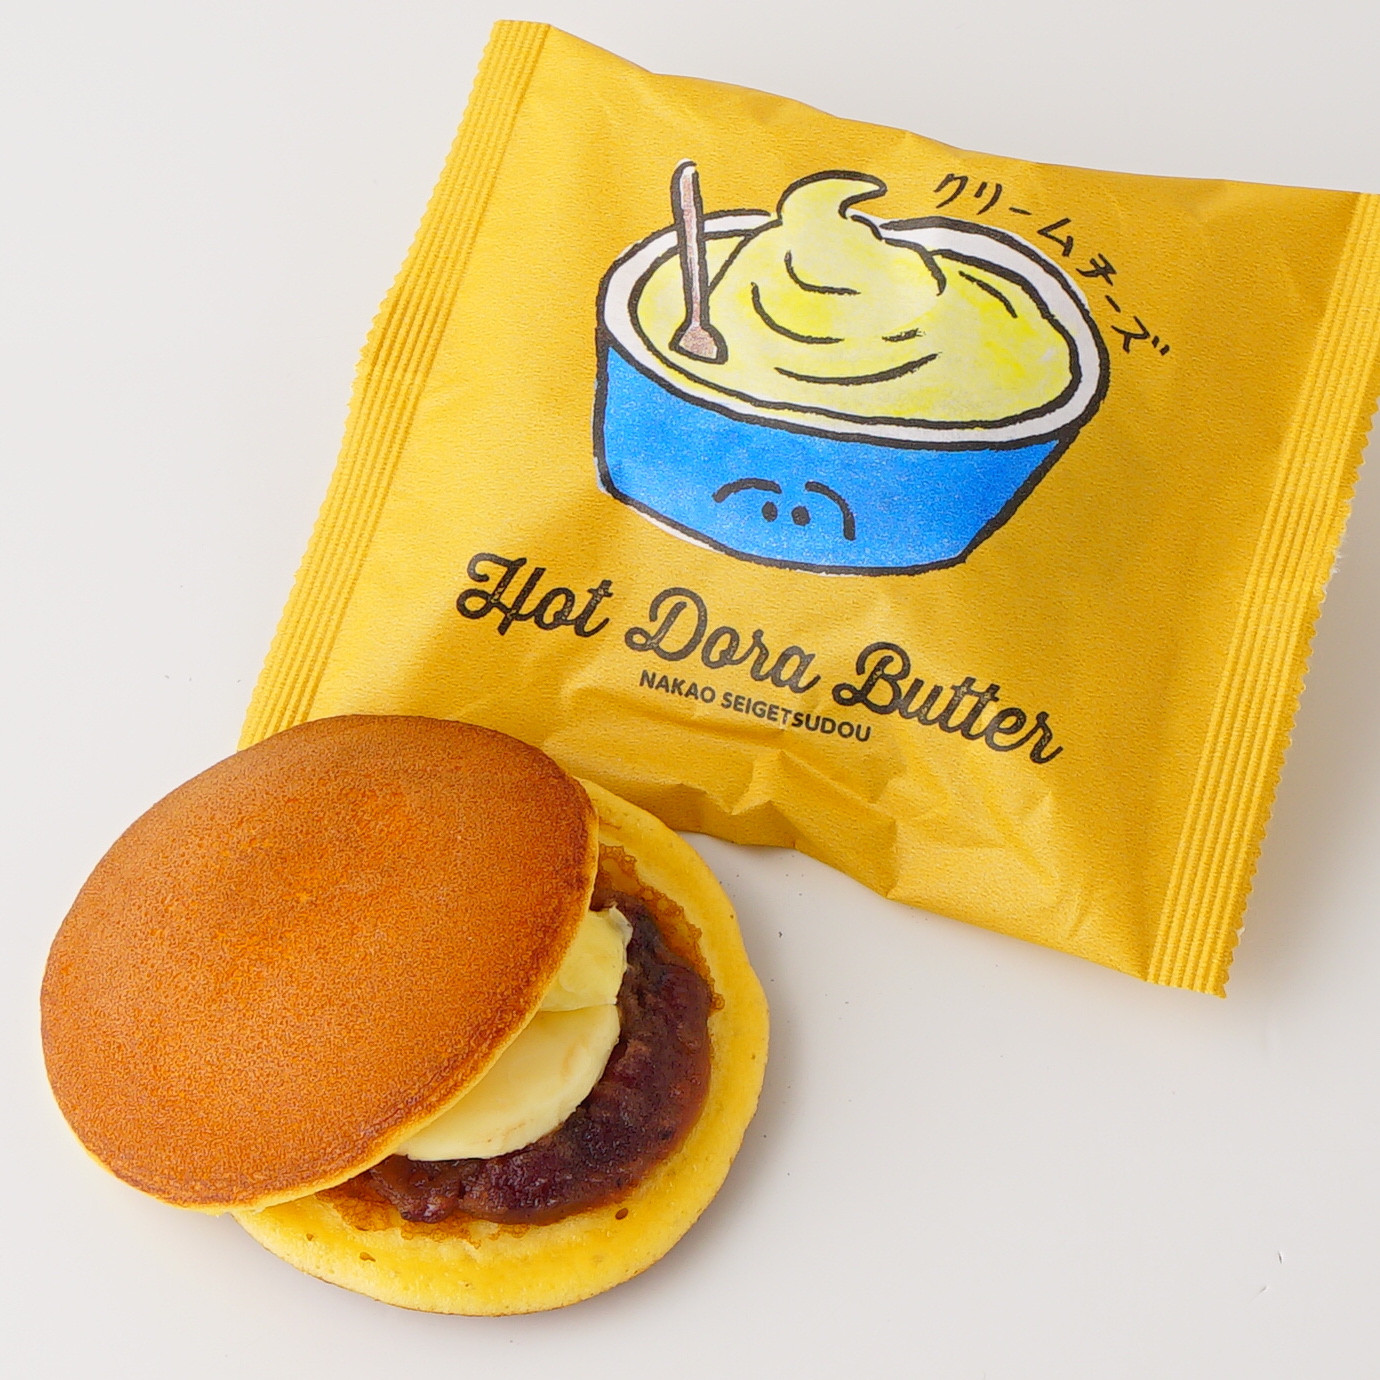 【富山】Hot Dora Butter 10個詰め合わせセット(5種各2個入) 8